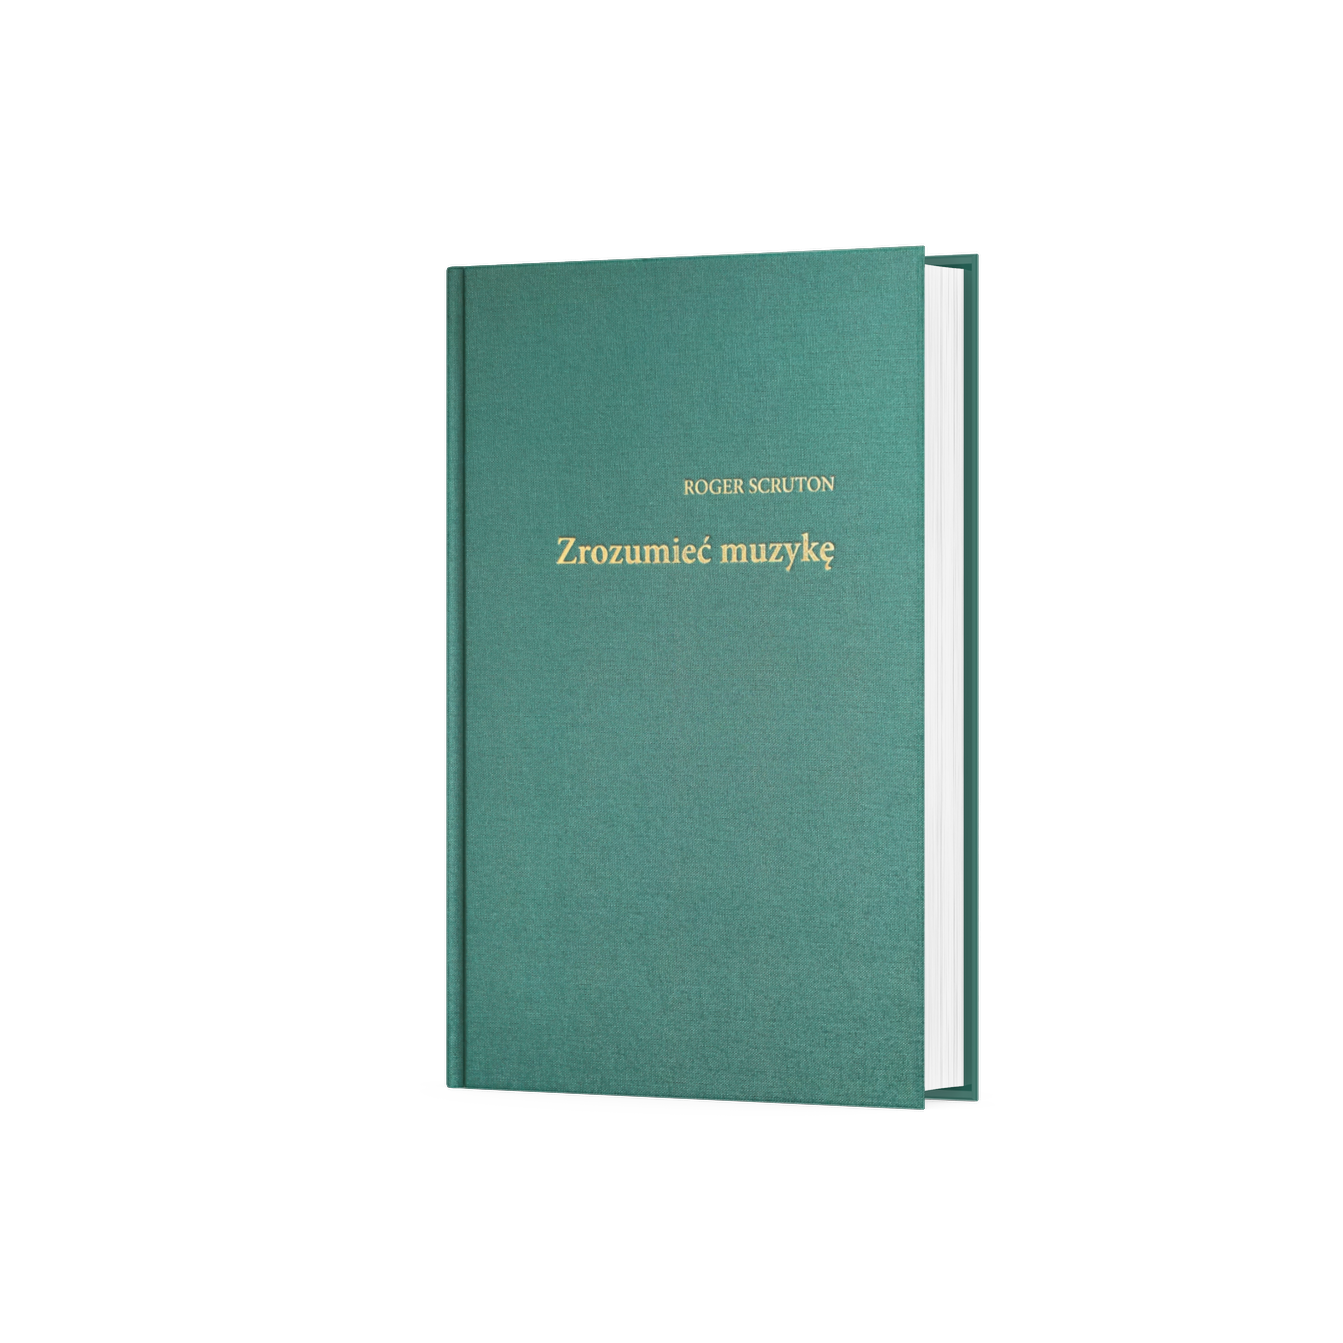 okładka książki Roger Scruton Zrozumieć muzykę w kolorze zielonym ze złotymi napisami